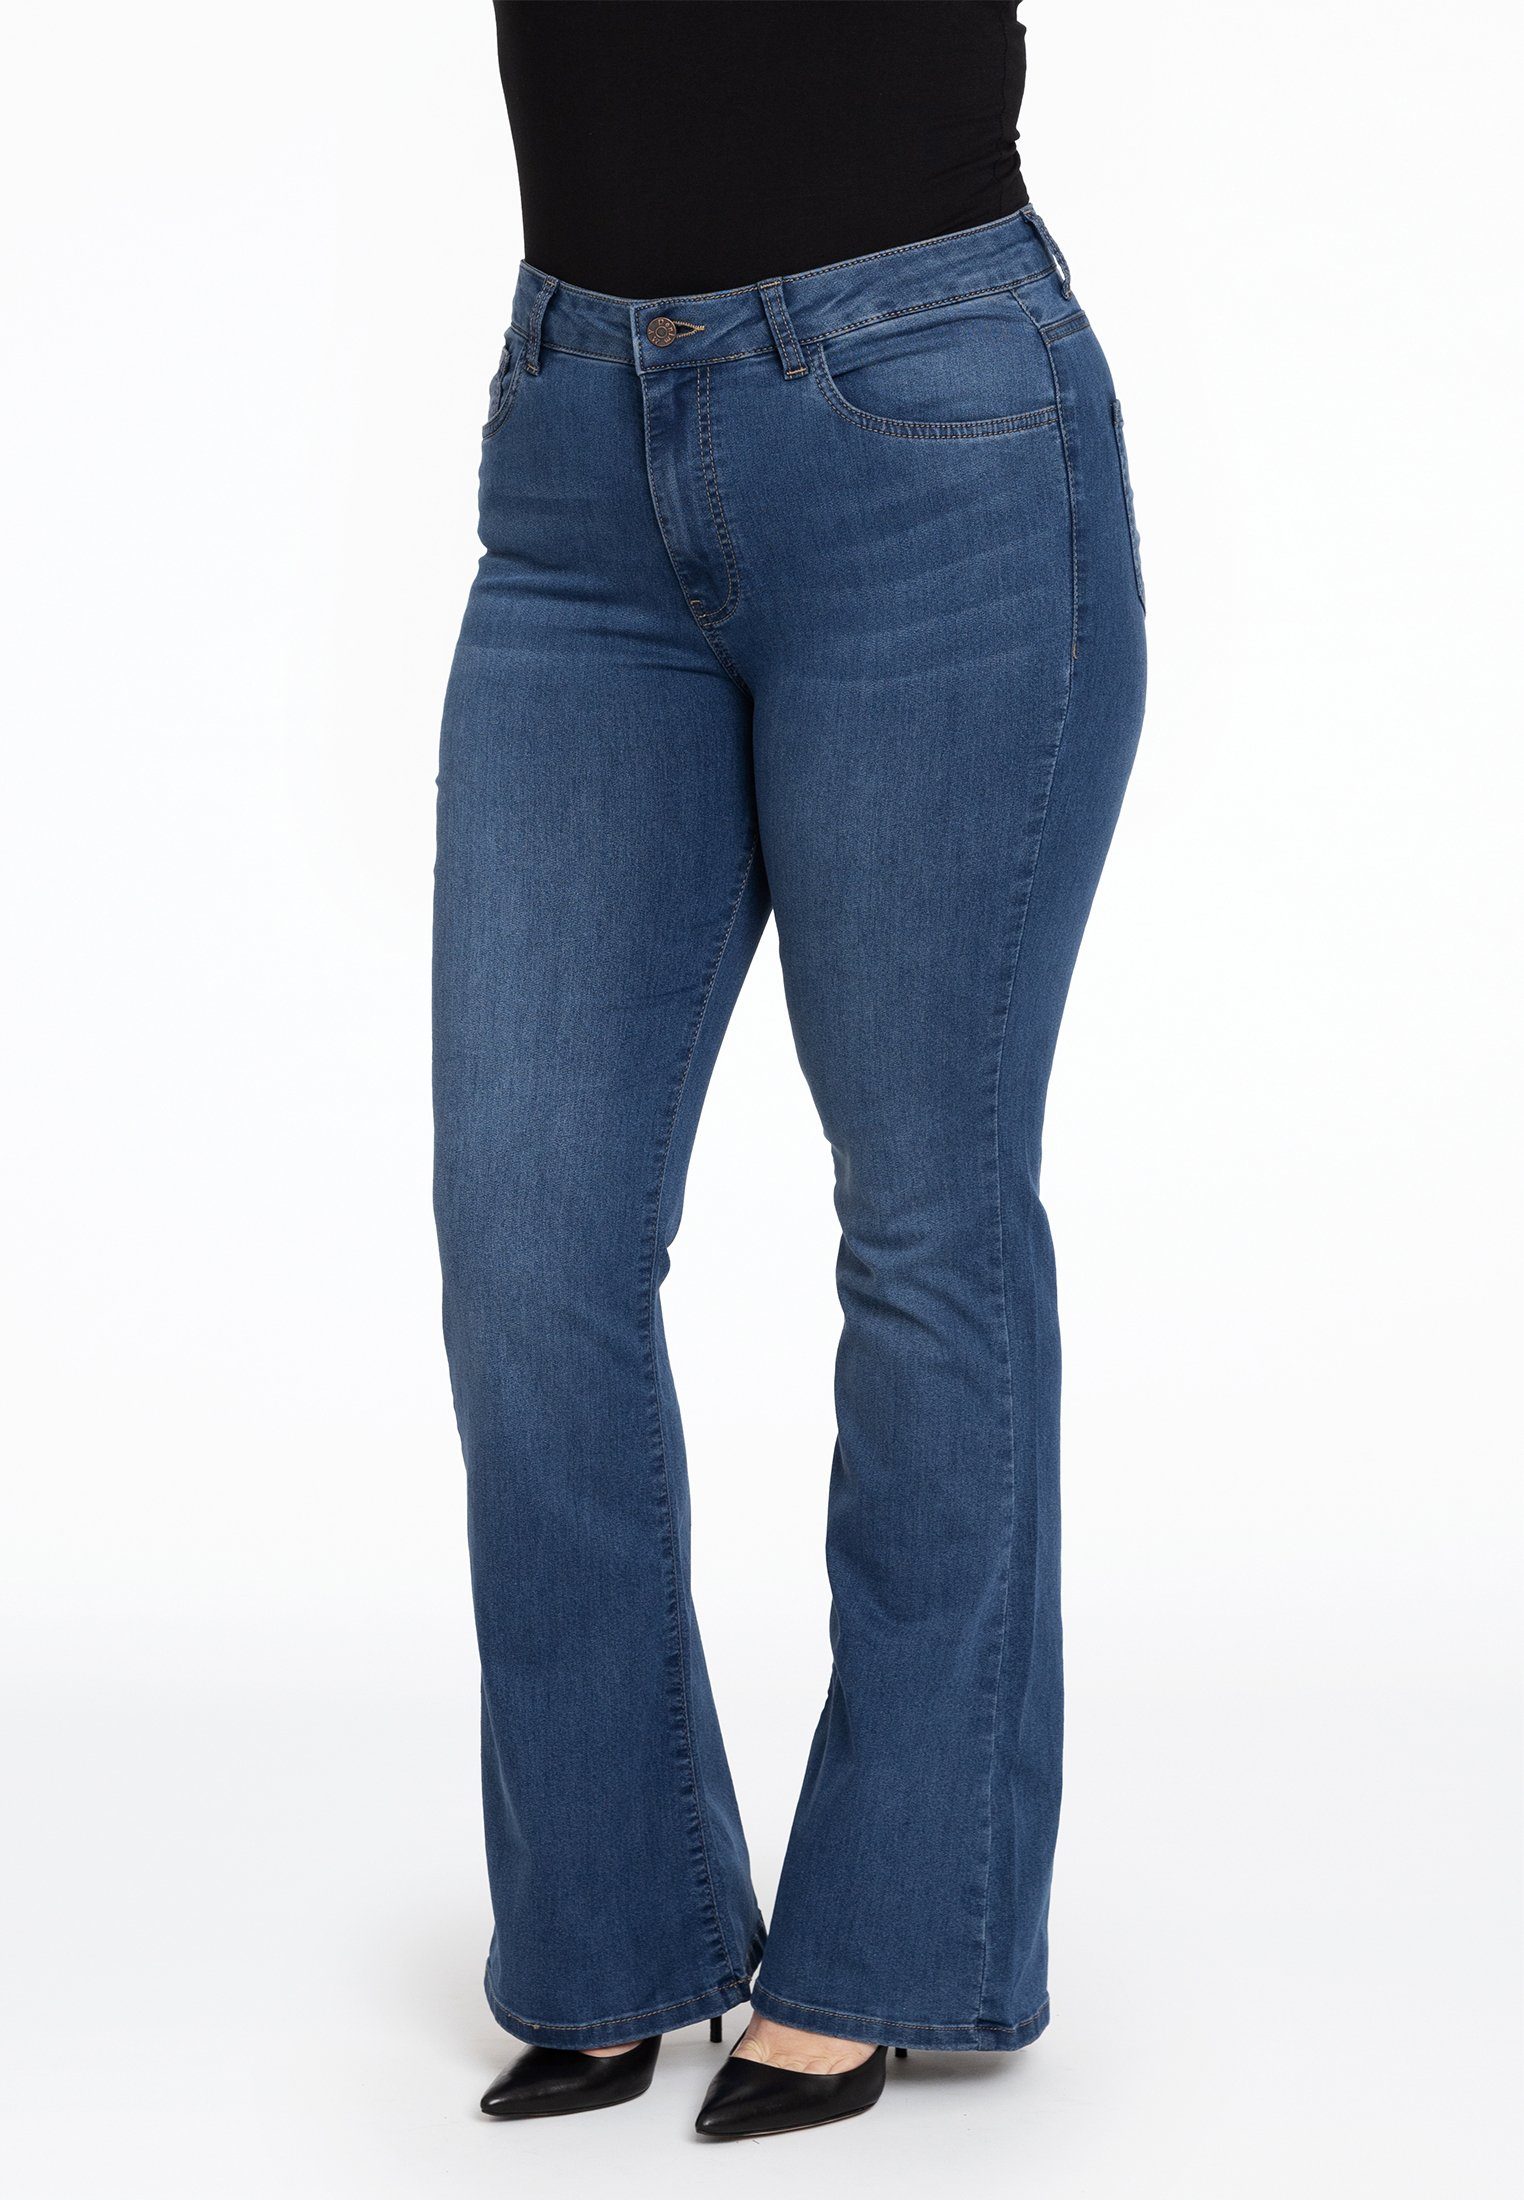 High-waist-Jeans Große Größen indigo Yoek